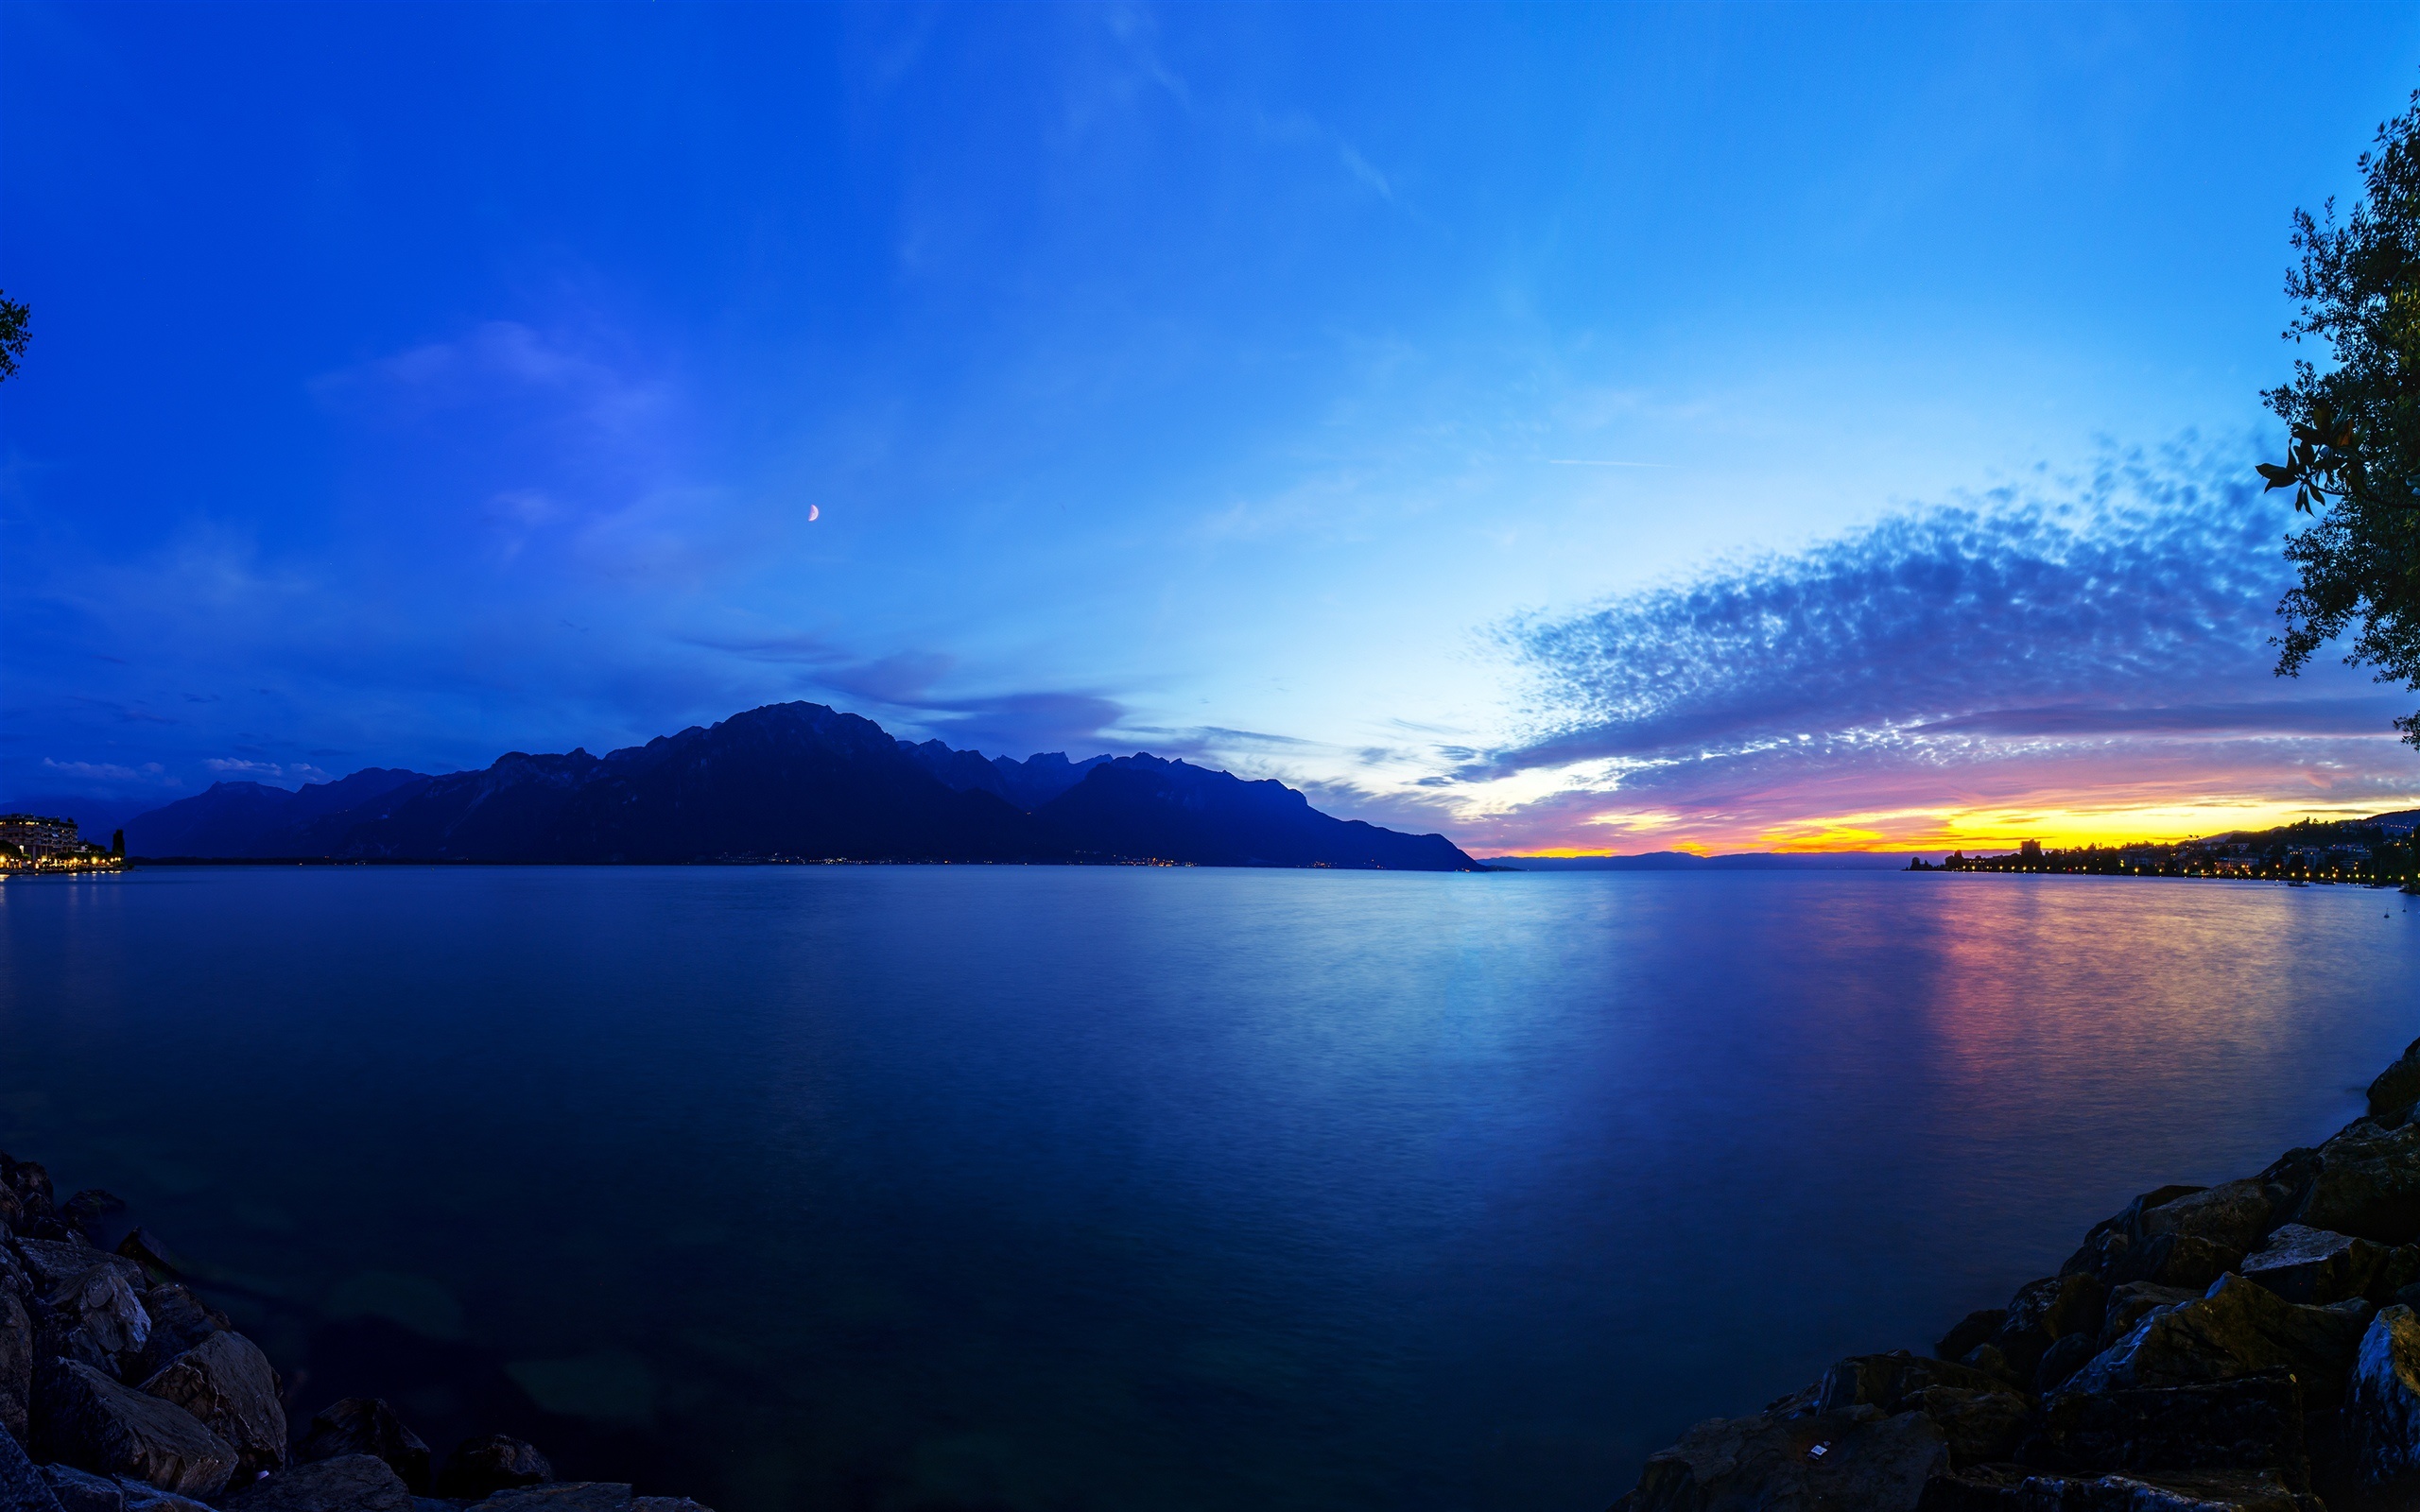 瑞士日内瓦湖 晚霞 云海 美丽的风景桌面壁纸 2560x1600 壁纸下载 Cn Hdwall365 Com